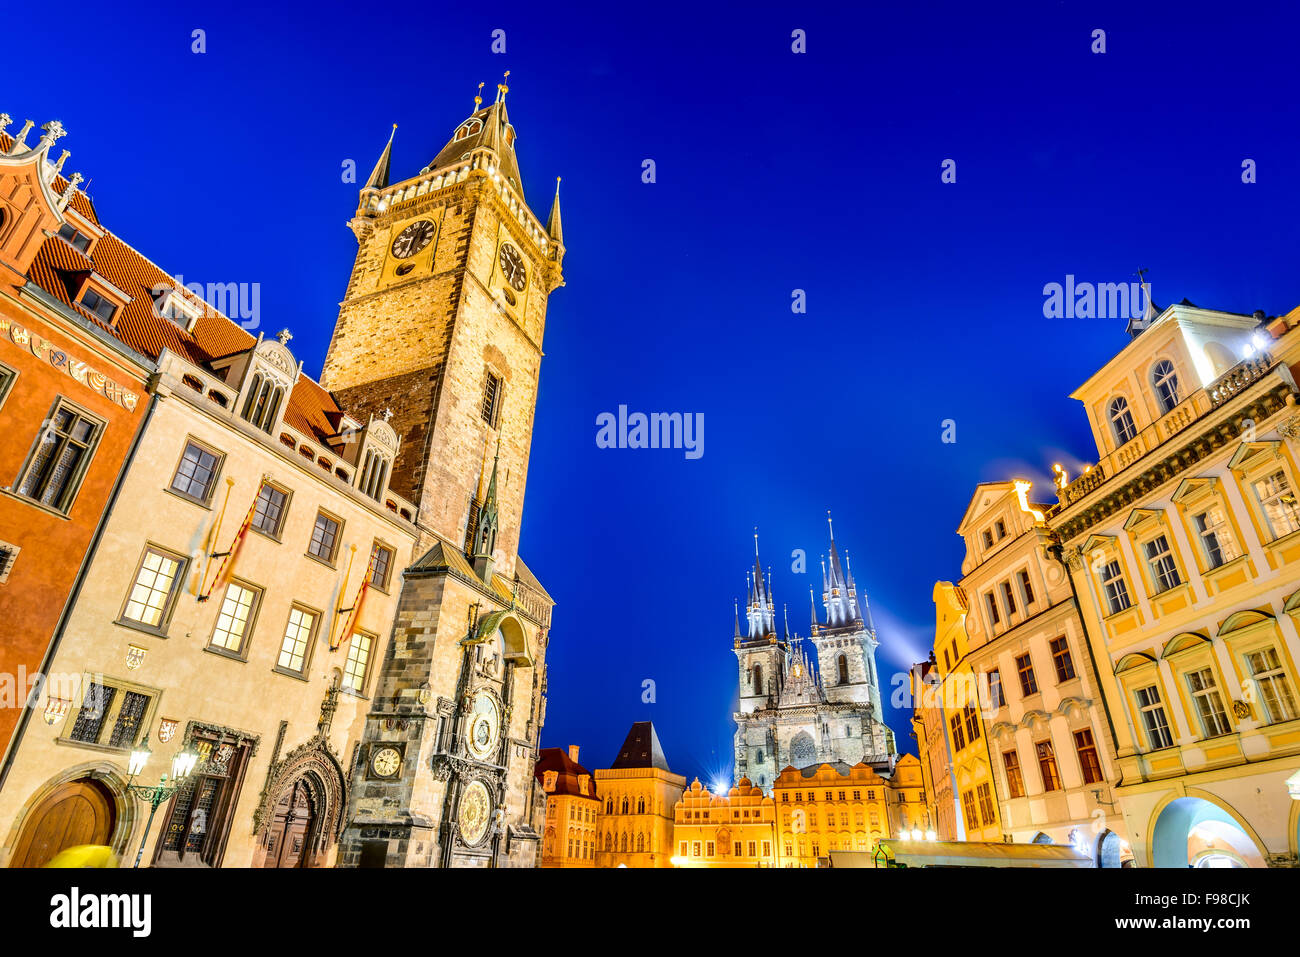 Praga, Repubblica Ceca. Immagine del tramonto con il Vecchio Municipio di Tyn e la chiesa di Nostra Signora in Starometska Square, Gohtic style in Boemia. Foto Stock